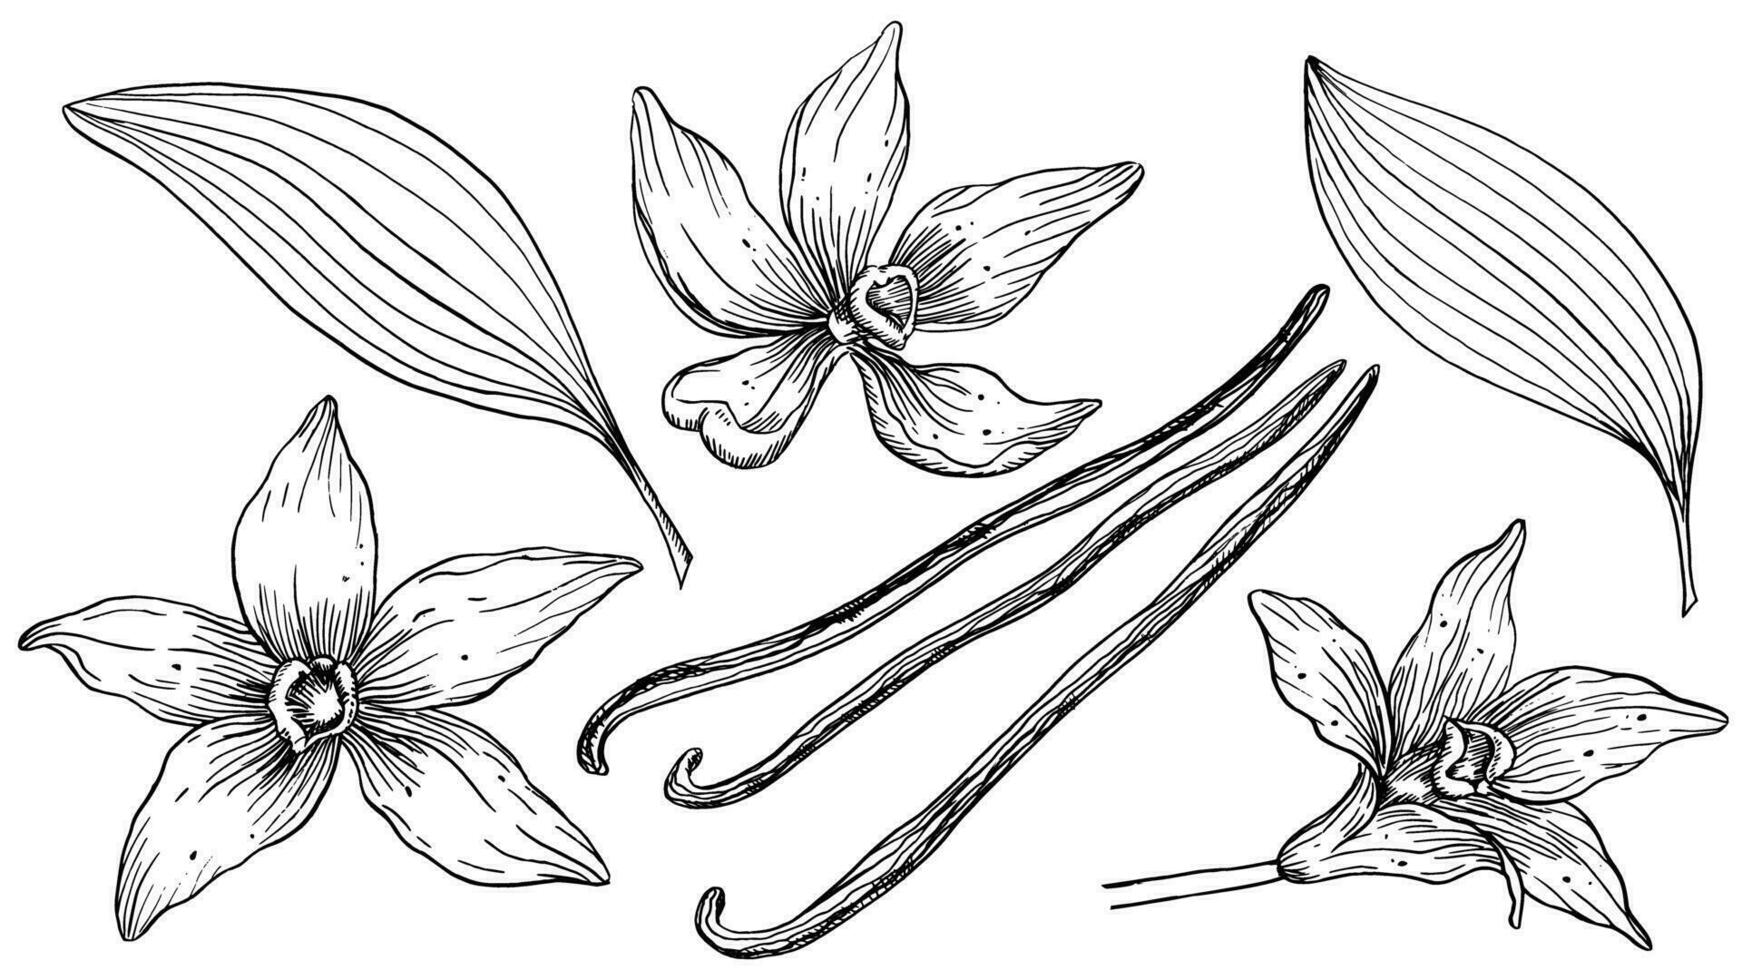 vanilj blomma med pinnar uppsättning. vektor hand dragen illustration av orkide blomma och skida på isolerat bakgrund. bunt med översikt teckning av krydda. skiss i linje konst stil målad förbi svart bläck.